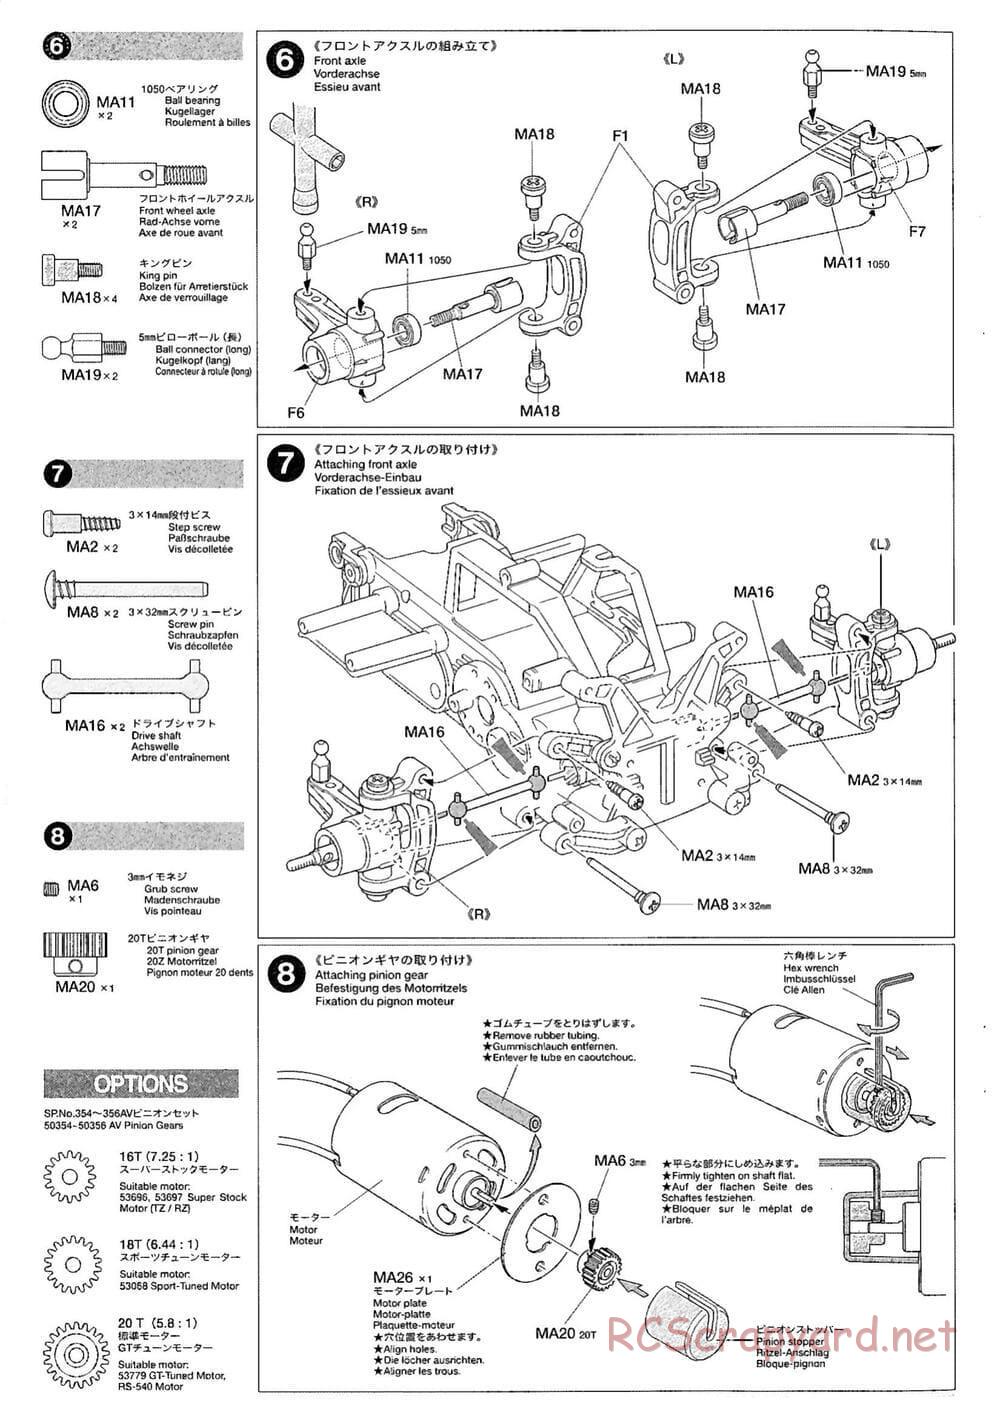 Tamiya - M-03M Chassis - Manual - Page 6